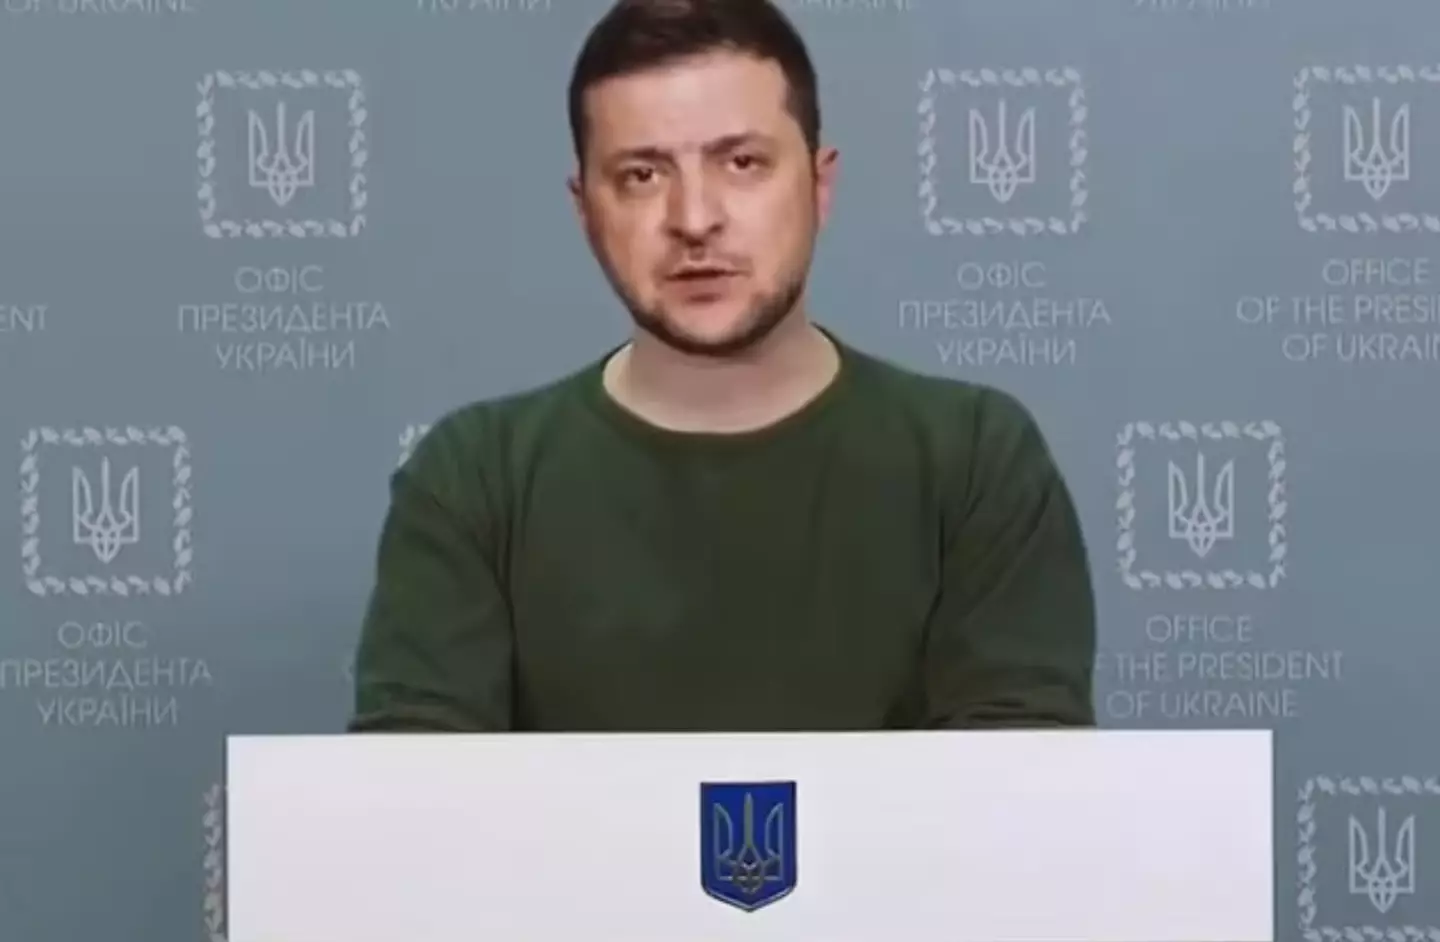 A Deepfake of President Zelenskyy.